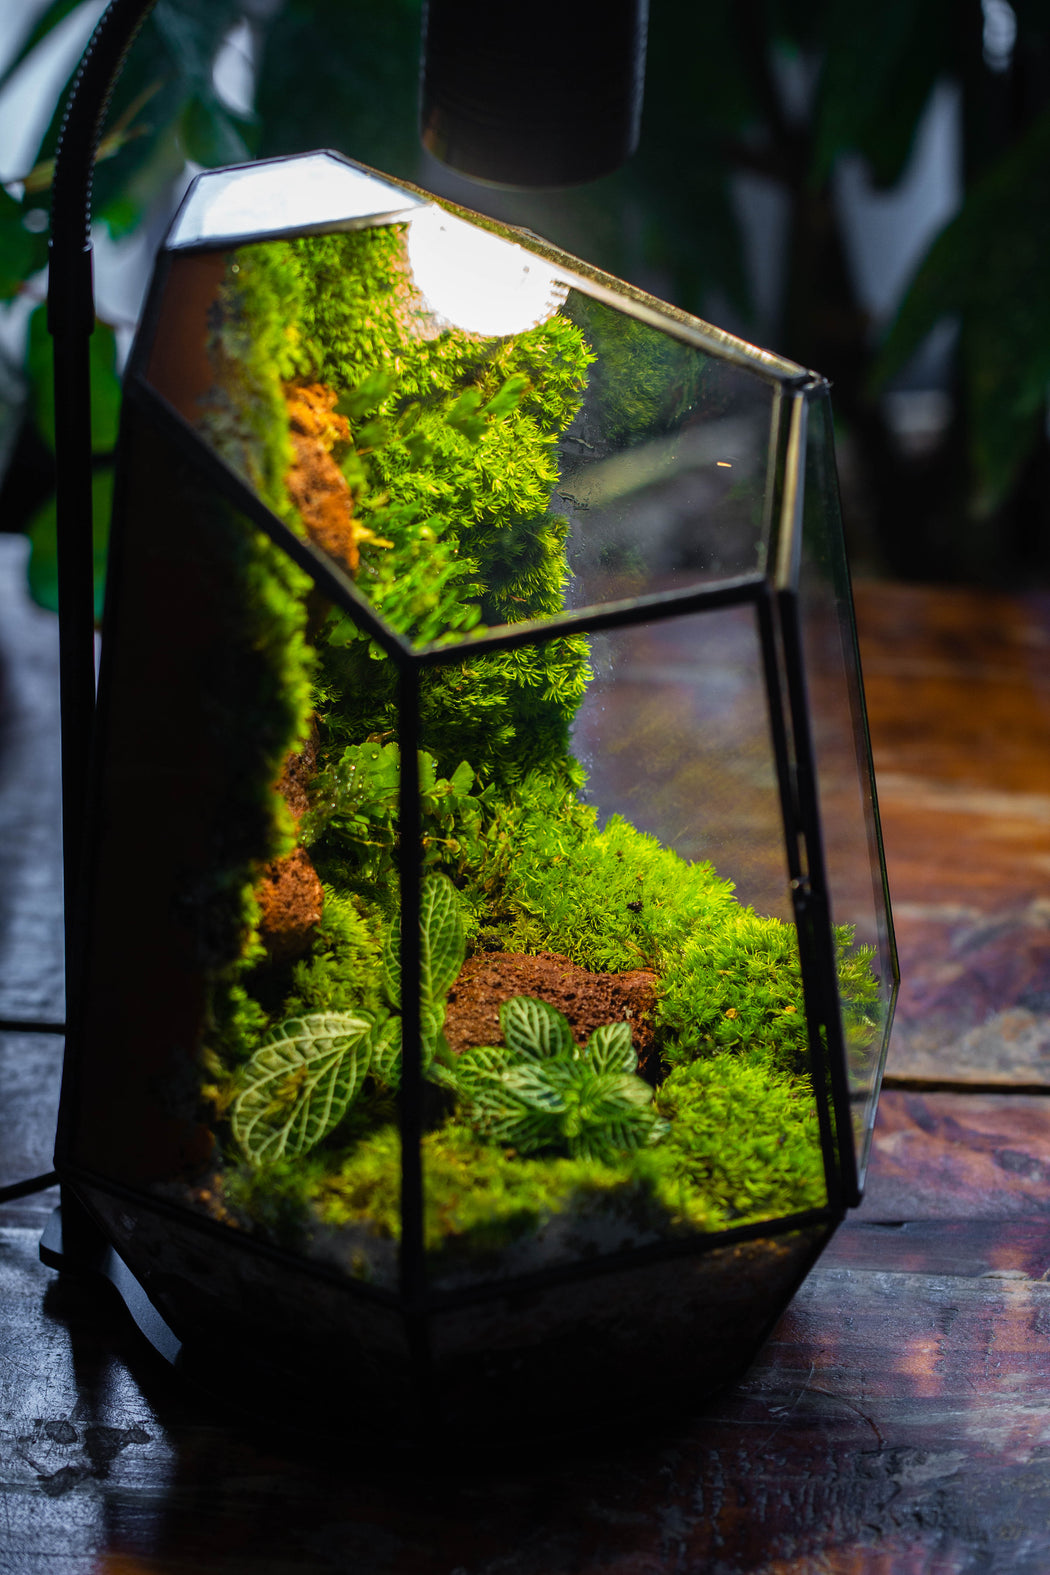 Rainforest terrarium project: Live Moss Wall Iregular Terrarium Building Kit with matching LED Grow Light and Base - NCYPgarden